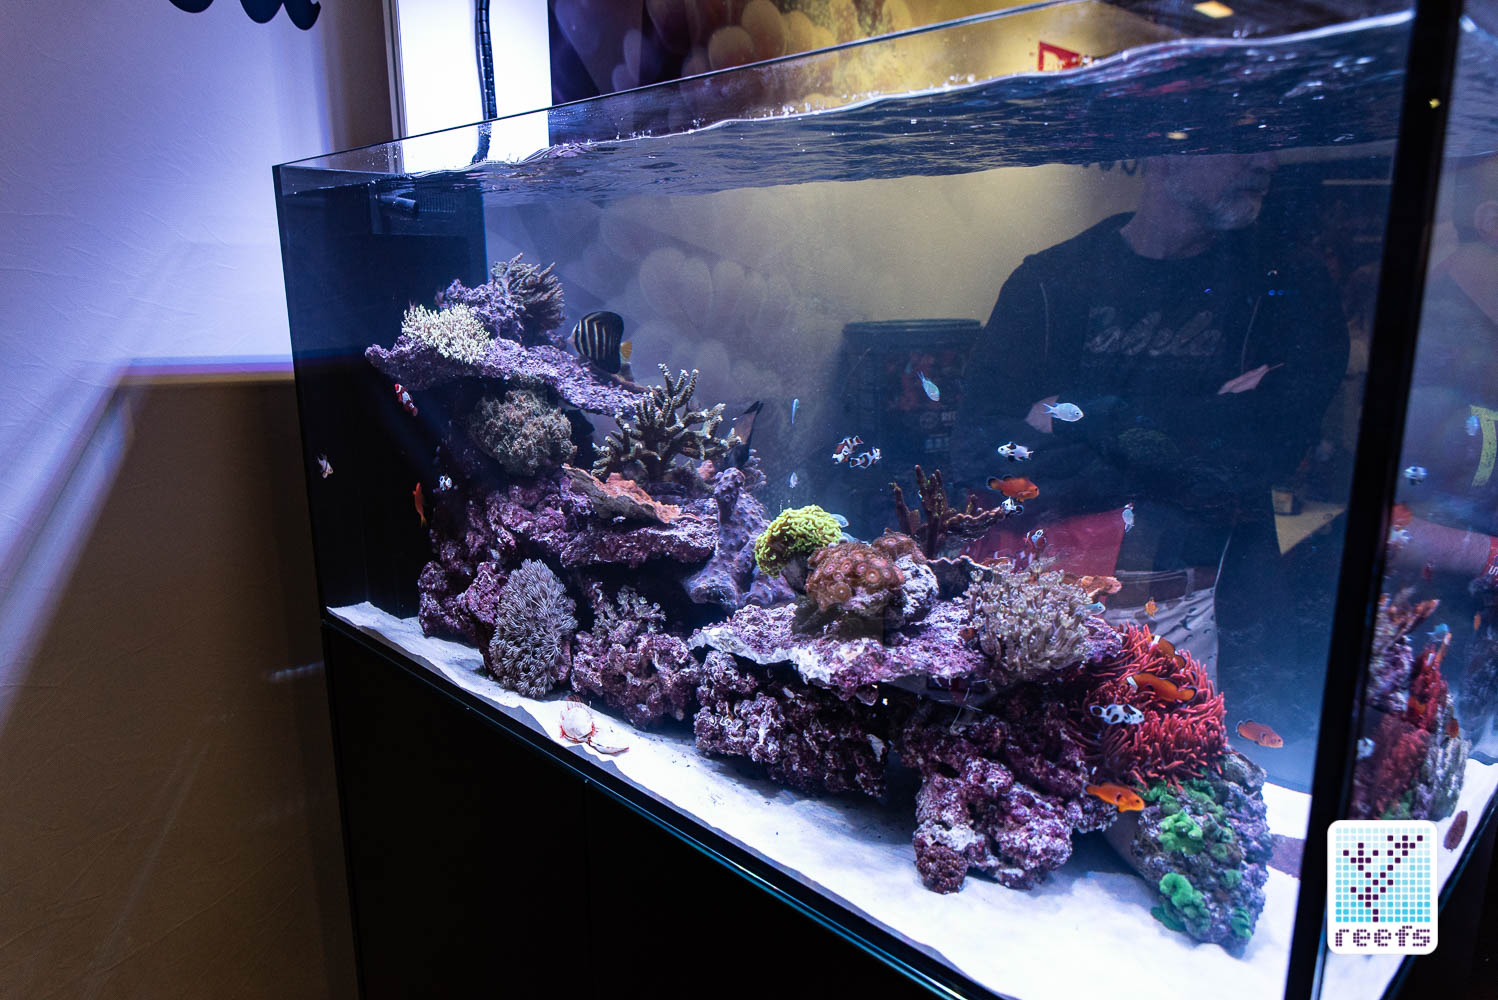 Reefs.com : Reef A Palooza NY 2018’s Best Display Tanks